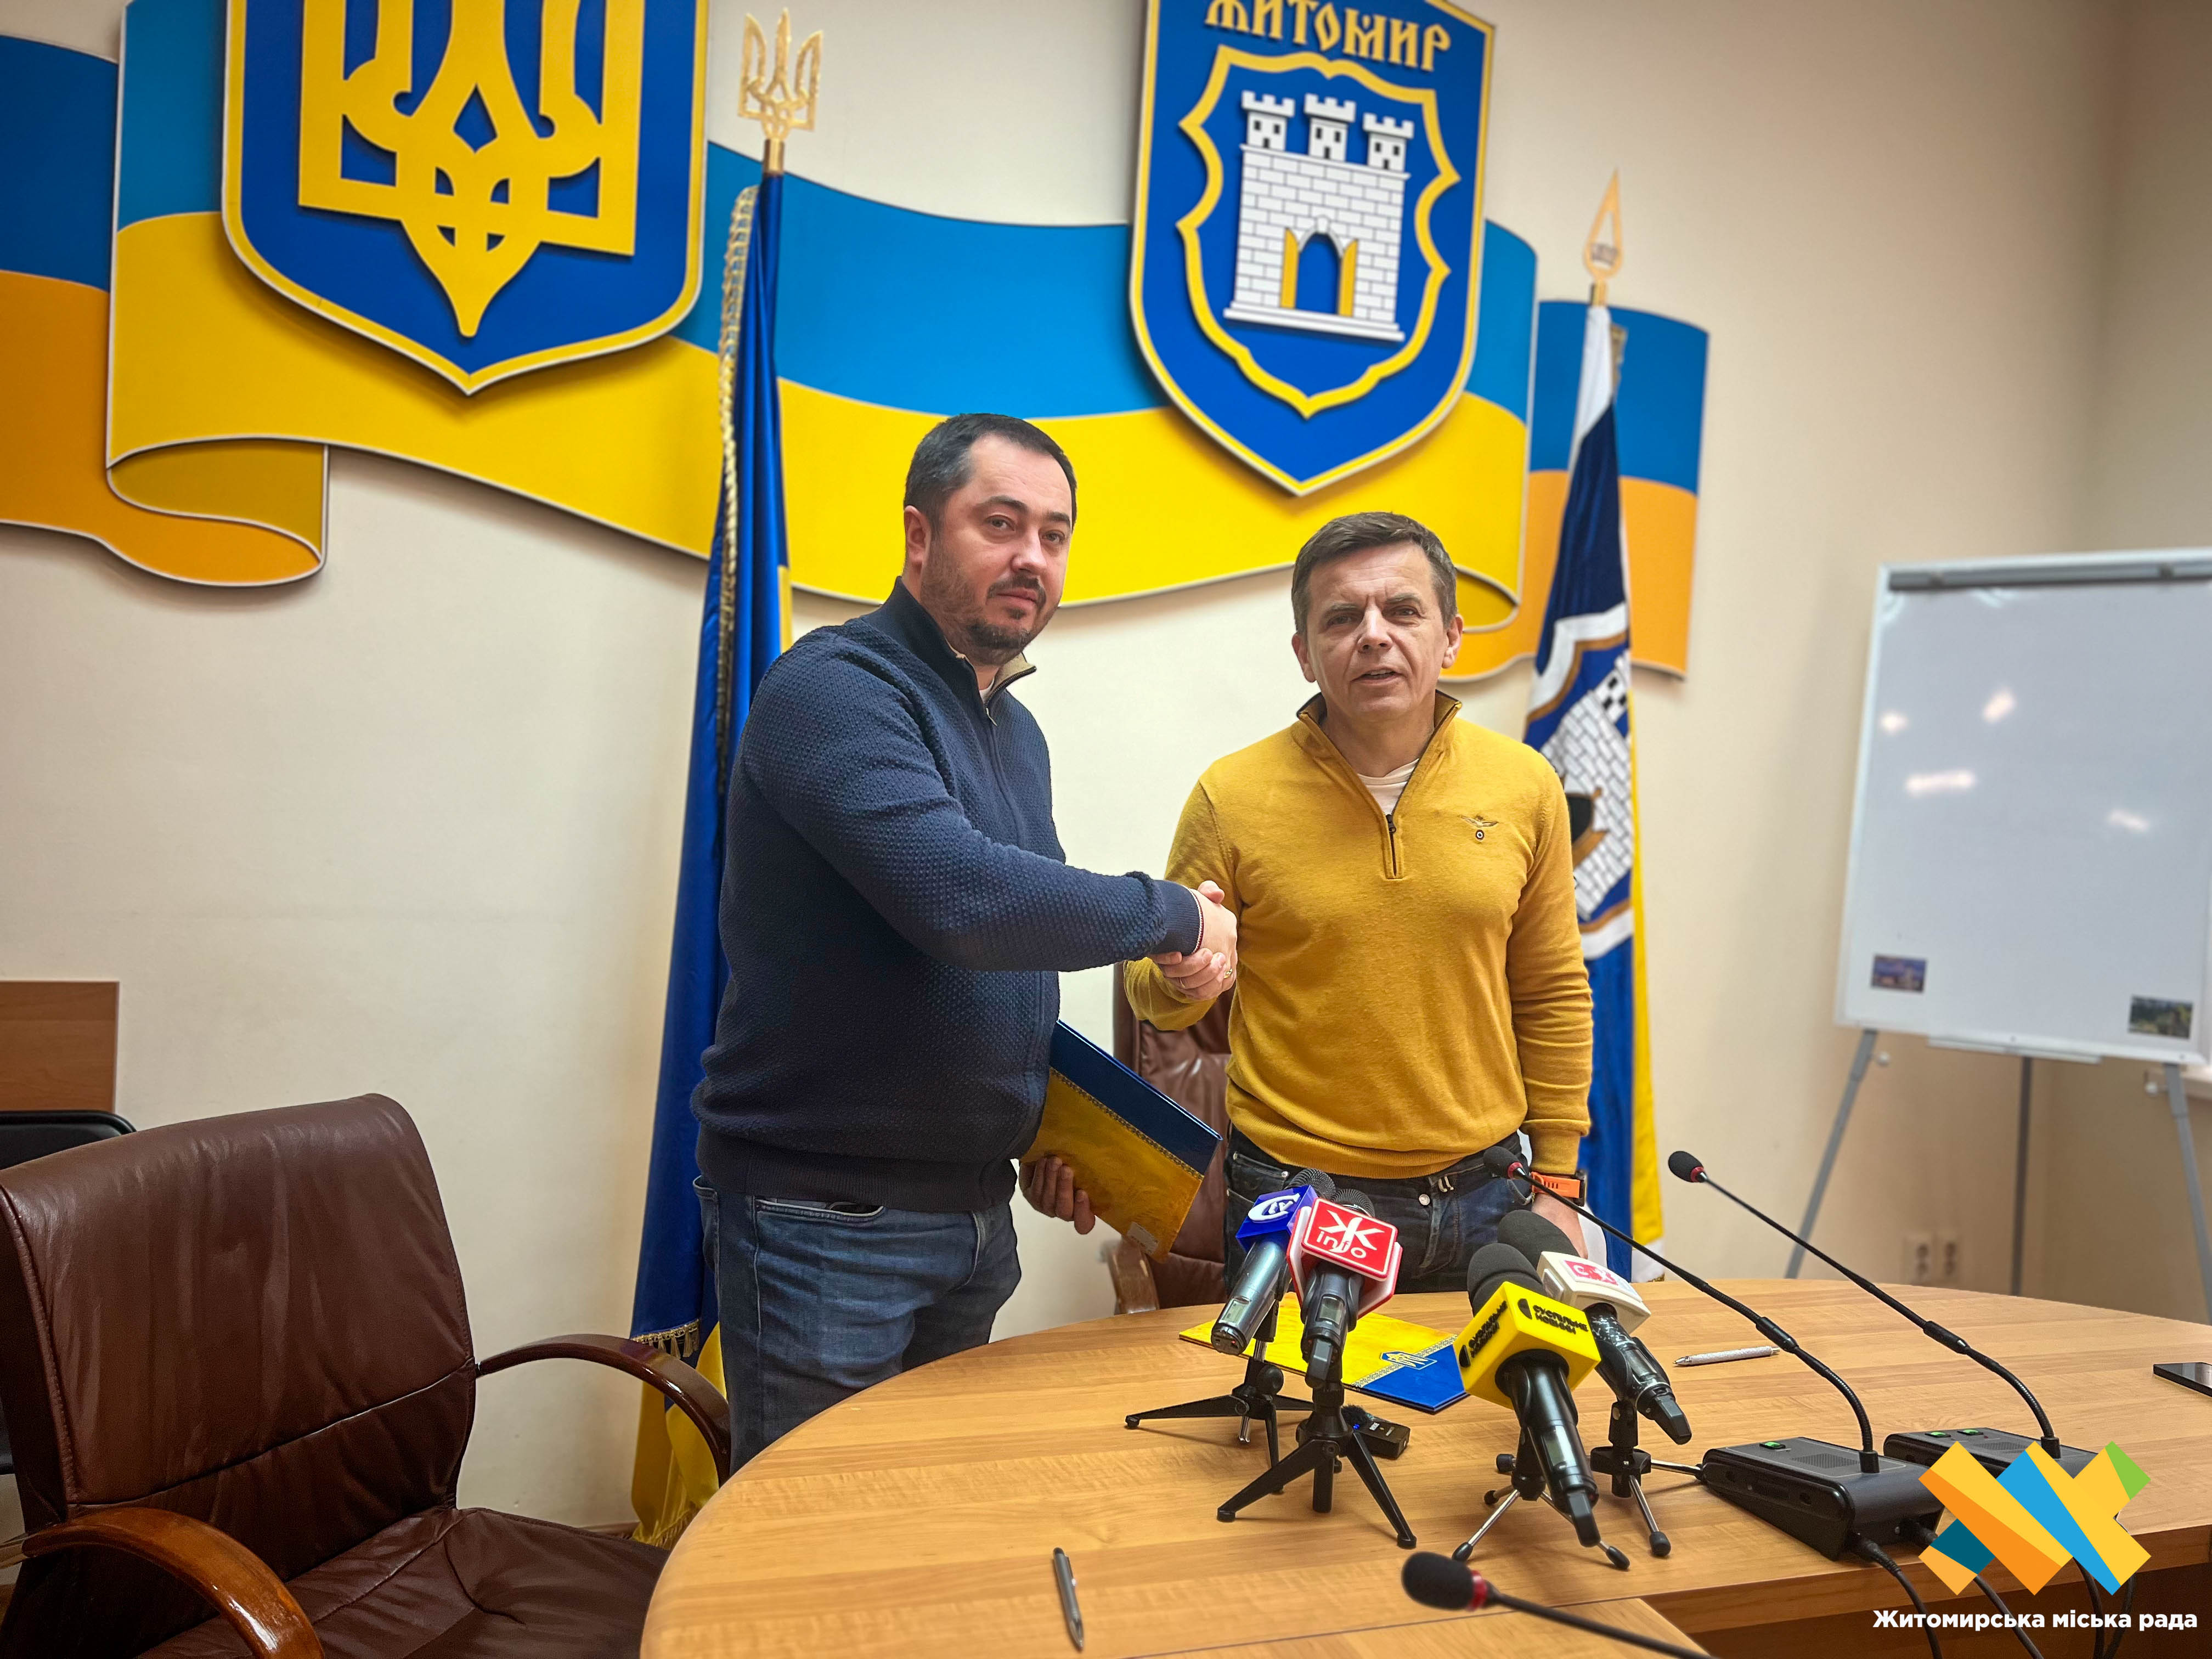 Сьогодні підписали меморандум про співпрацю між Житомирською міською радою та футбольним клубом «Полісся»